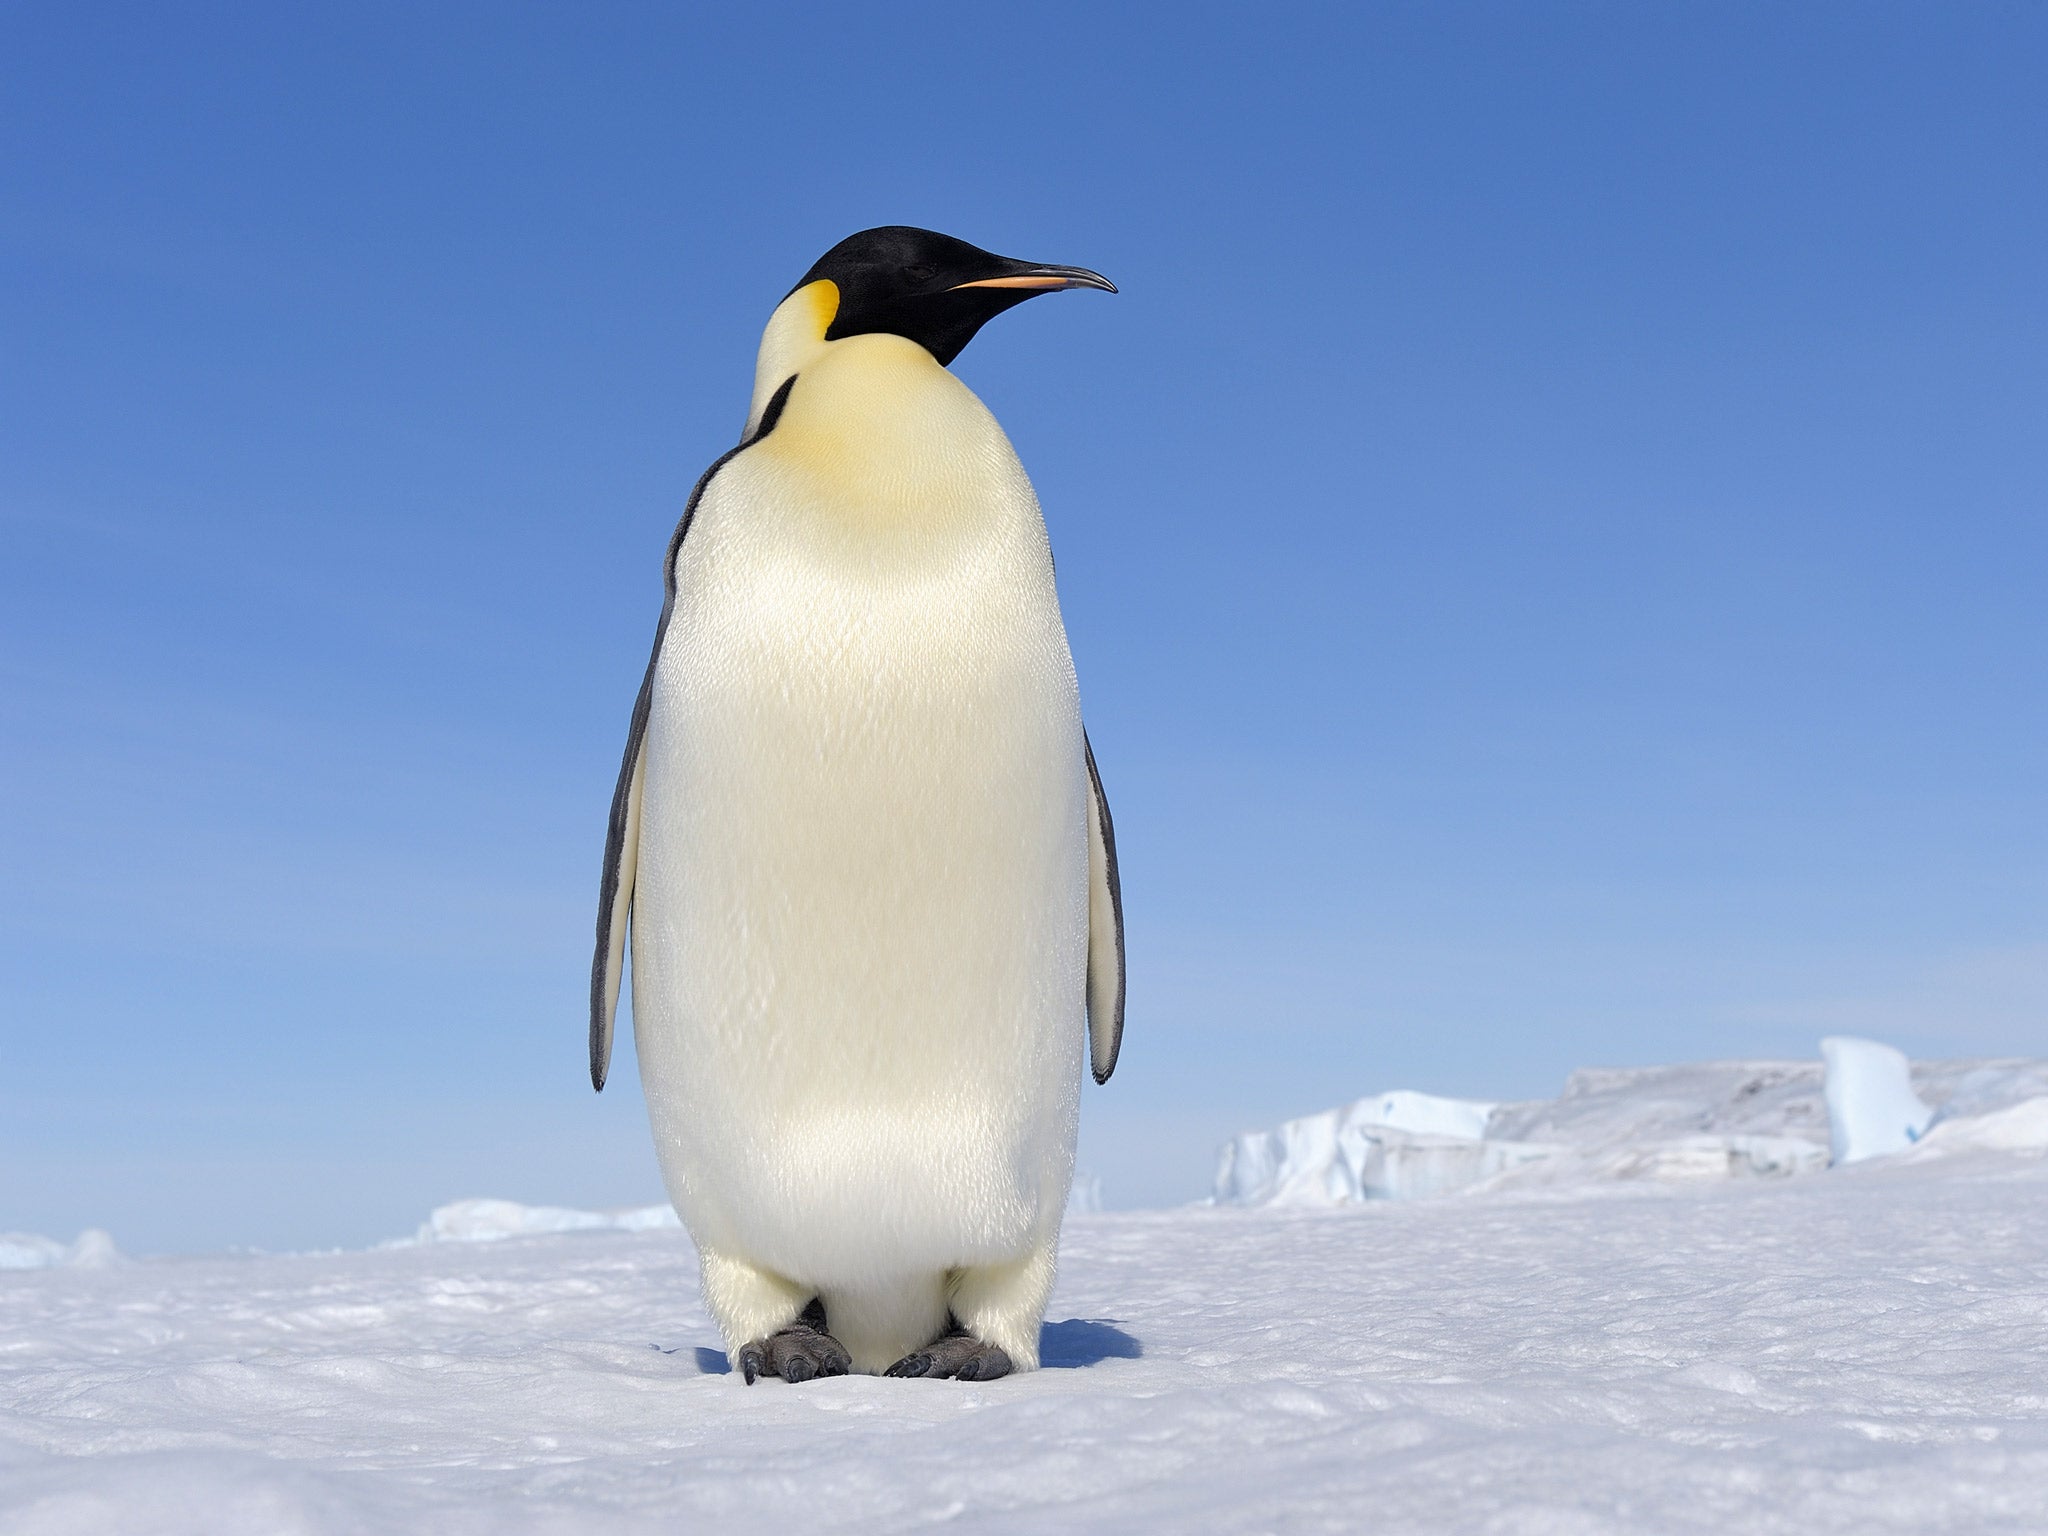 An Emperor penguin in Antarctica